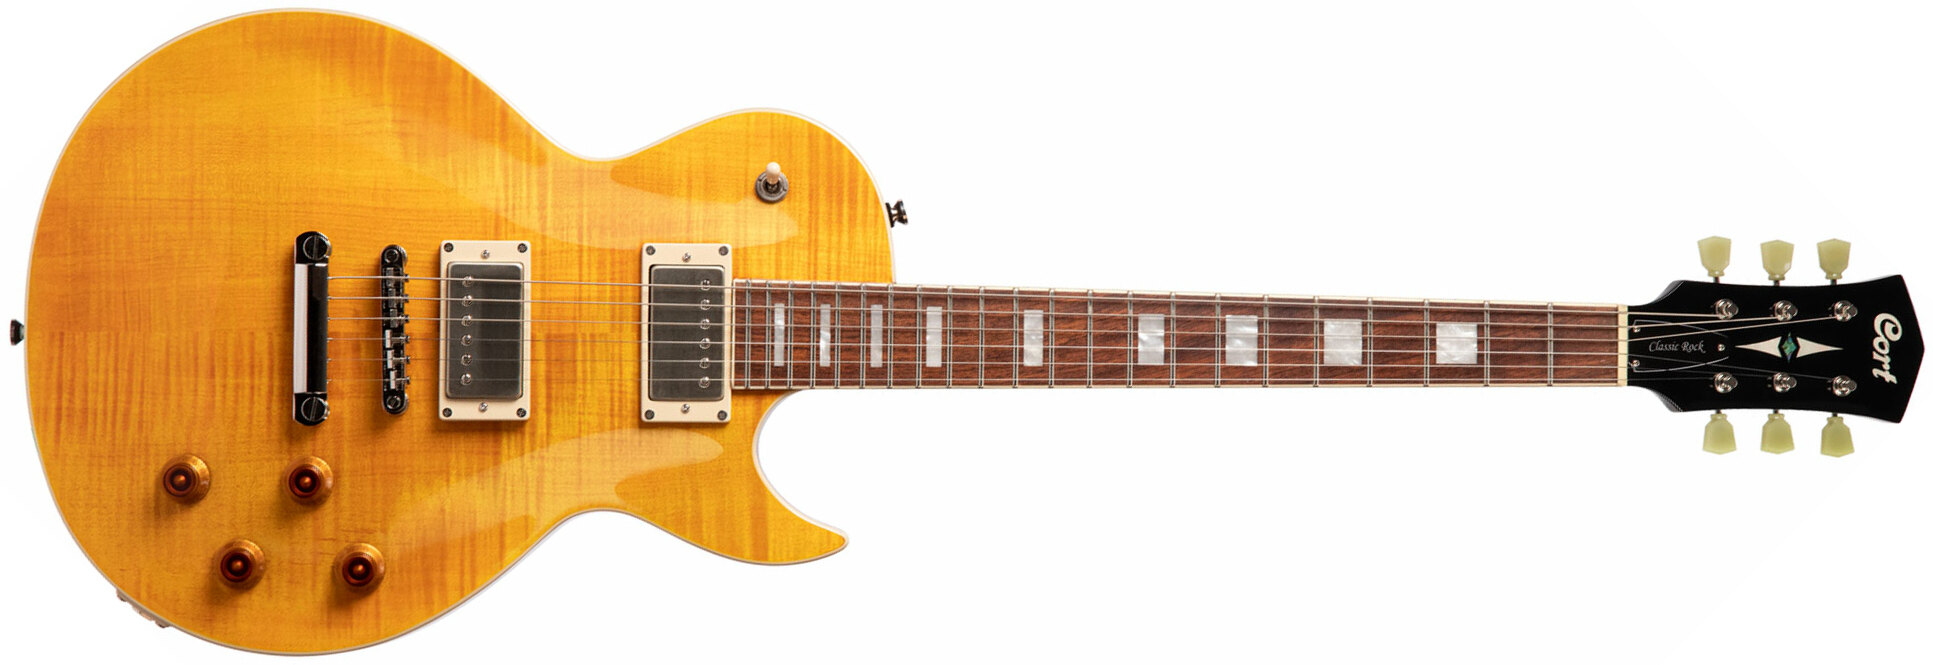 Cort Cr250 Ata Classic Rock Ht Hh Jat - Ambre Antique - Enkel gesneden elektrische gitaar - Main picture